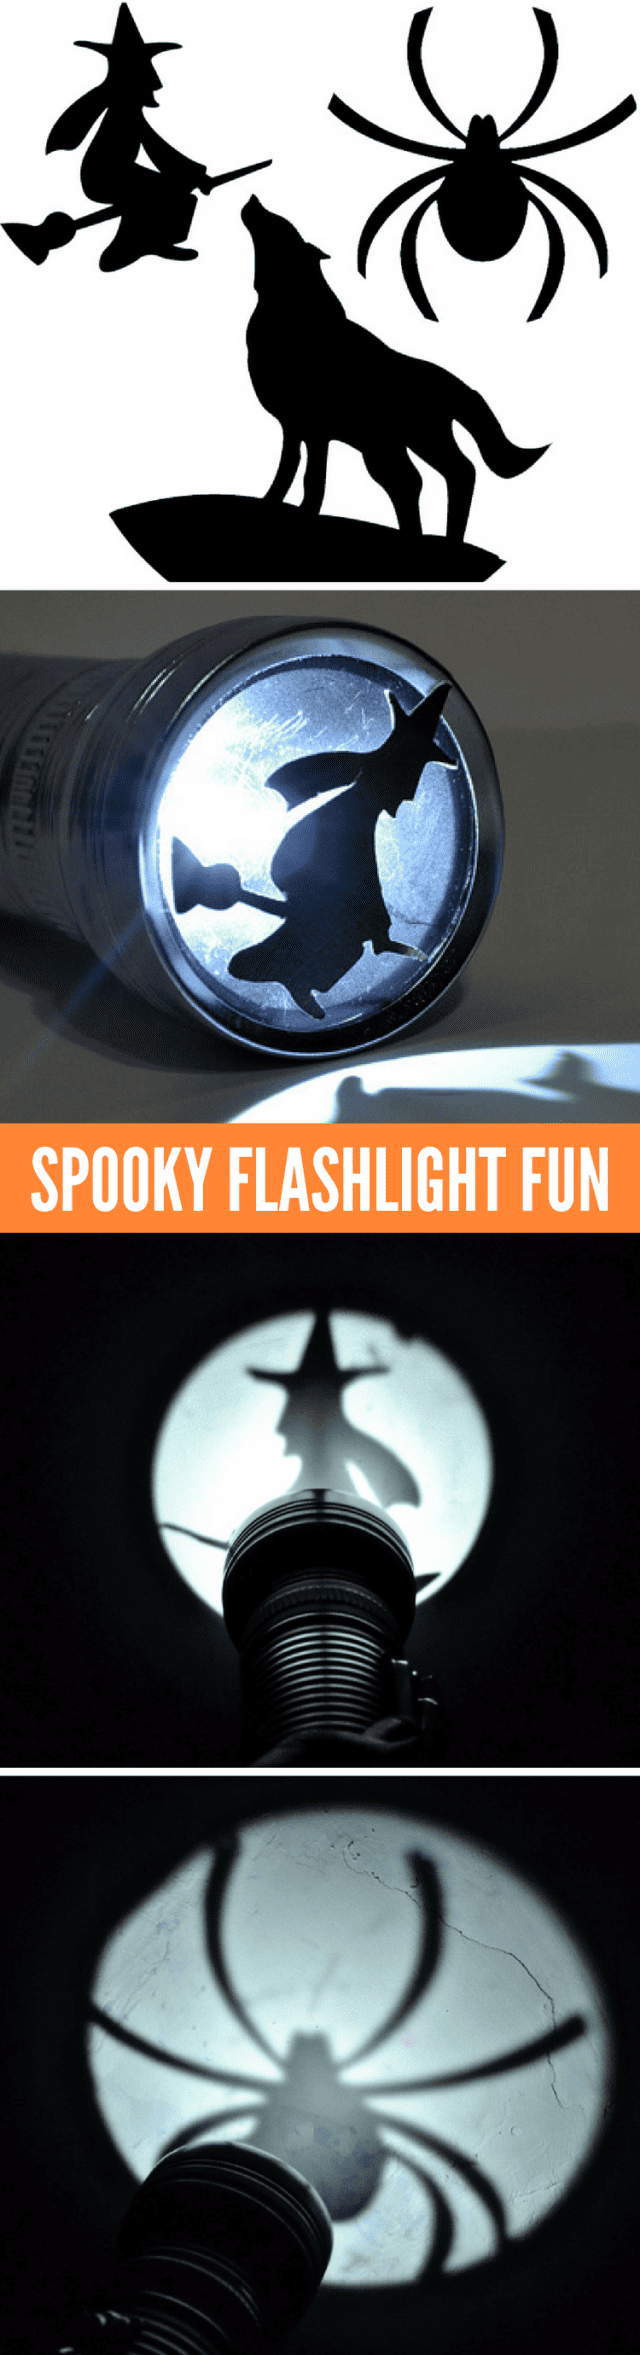 Halloween Shadow Art Flashlight Fun!